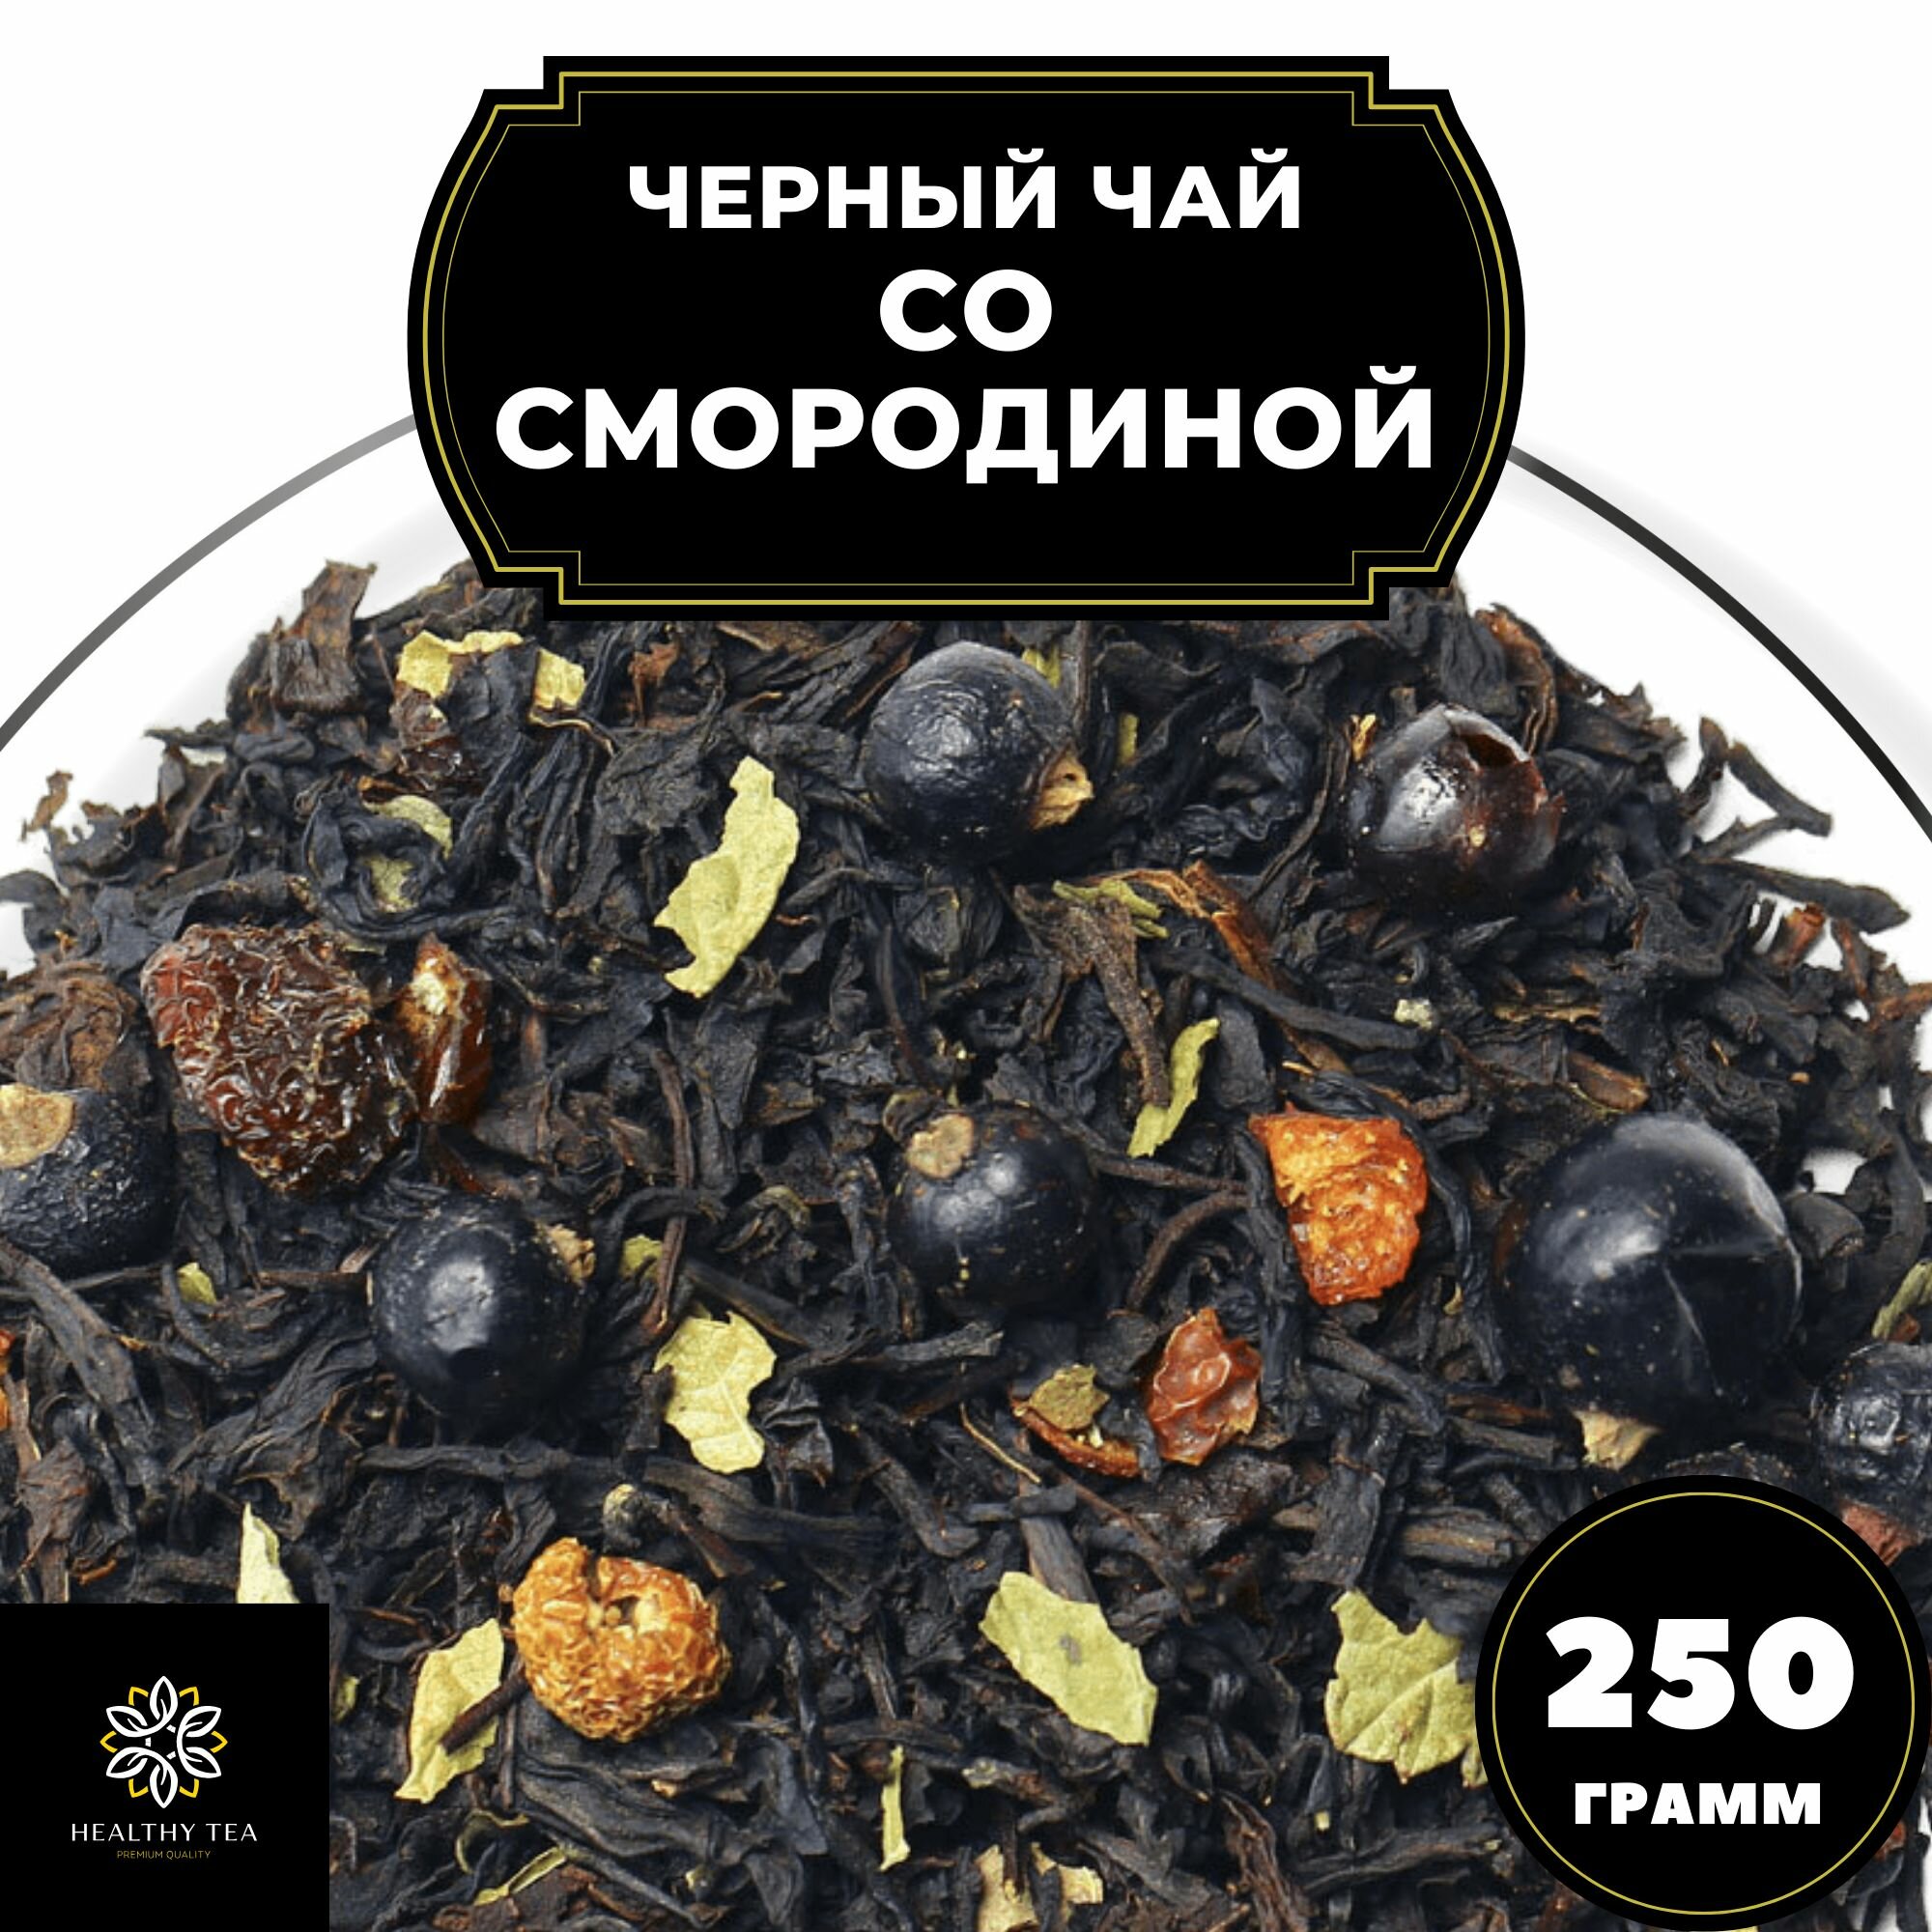 Индийский Черный чай с шиповником и смородиной "Со смородиной" (Premium) Полезный чай / HEALTHY TEA, 250 гр